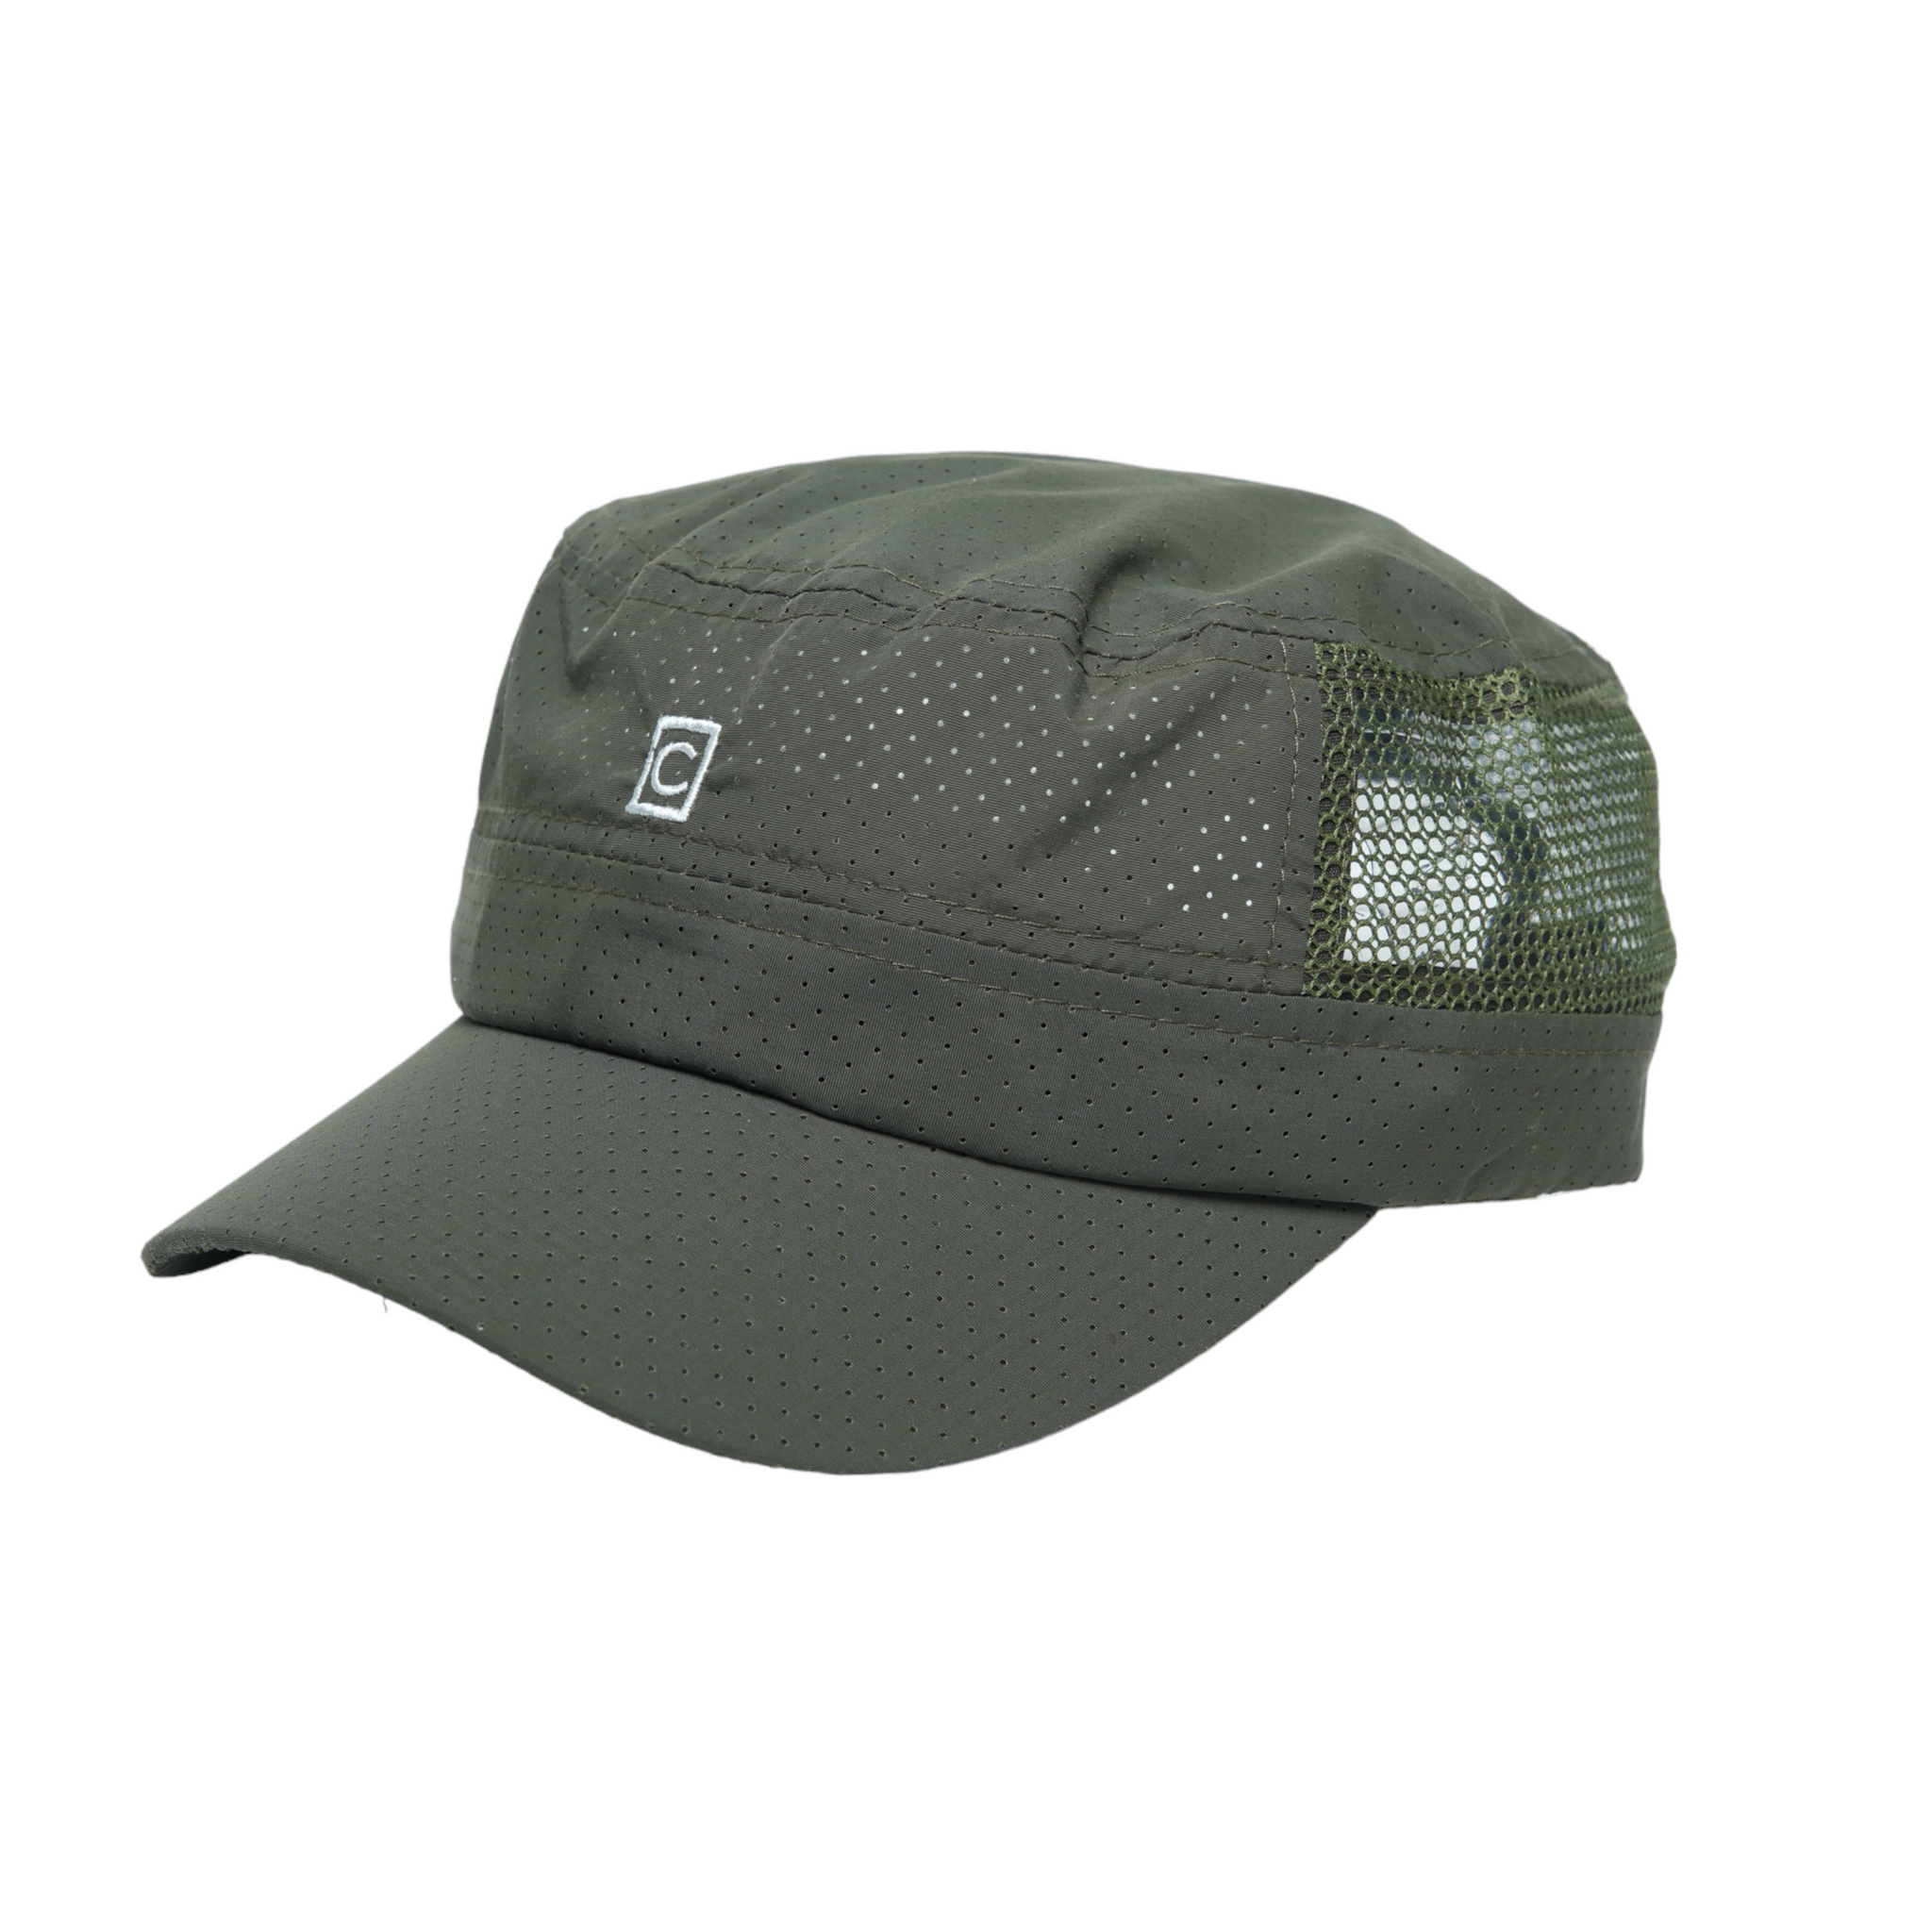 Chokore Breathable Mesh Flat Top Cap (Army Green)